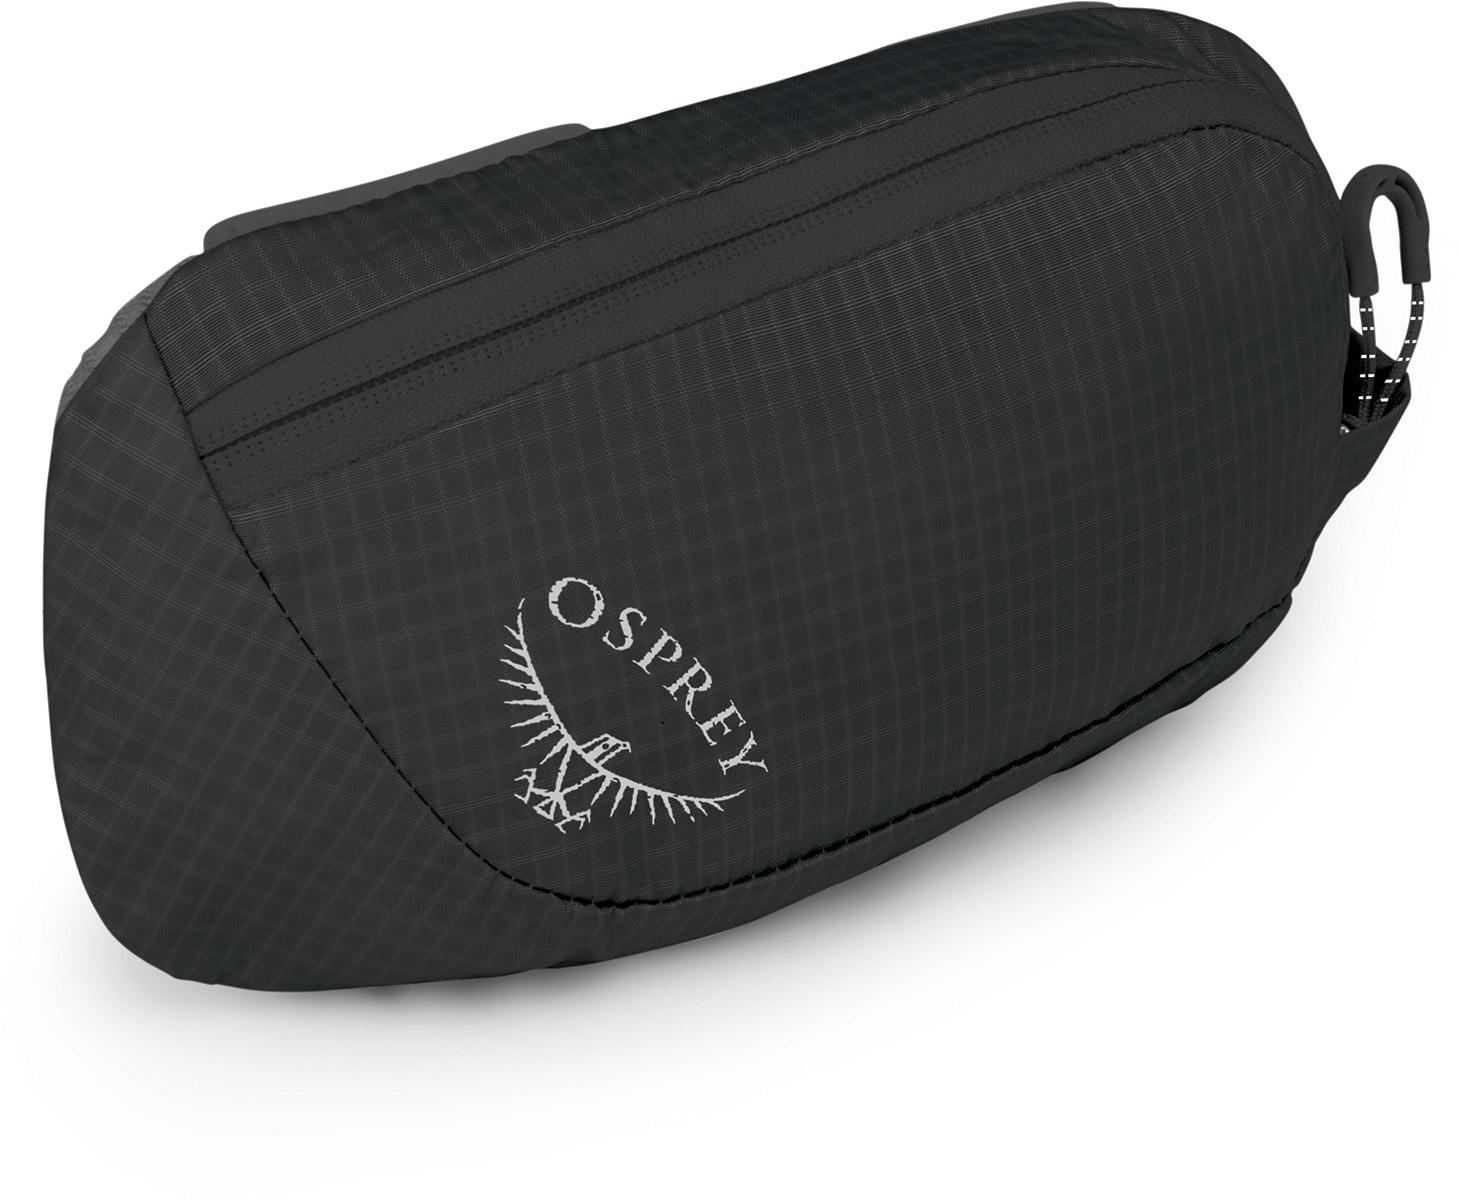 Osprey Pack Pocket Zippered - Black